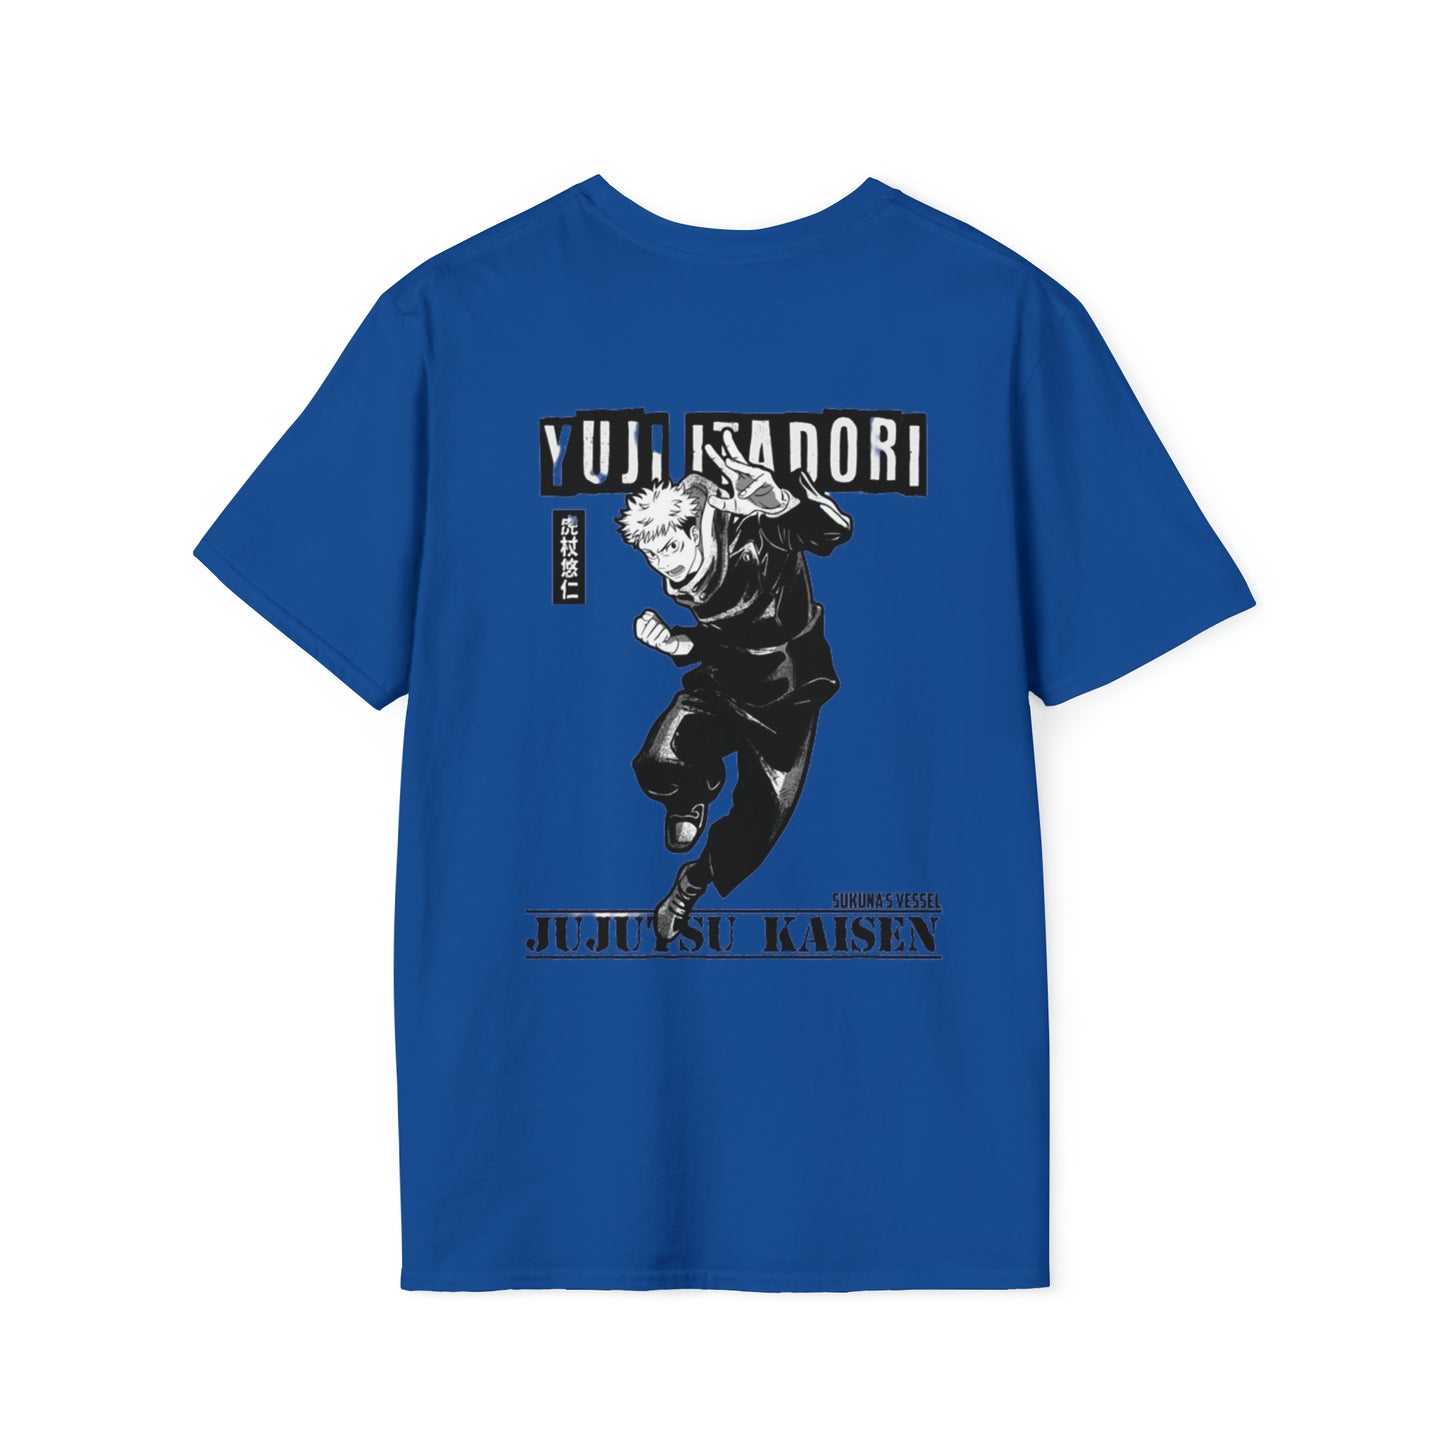 İtadori Yuji Unisex T-Shirt